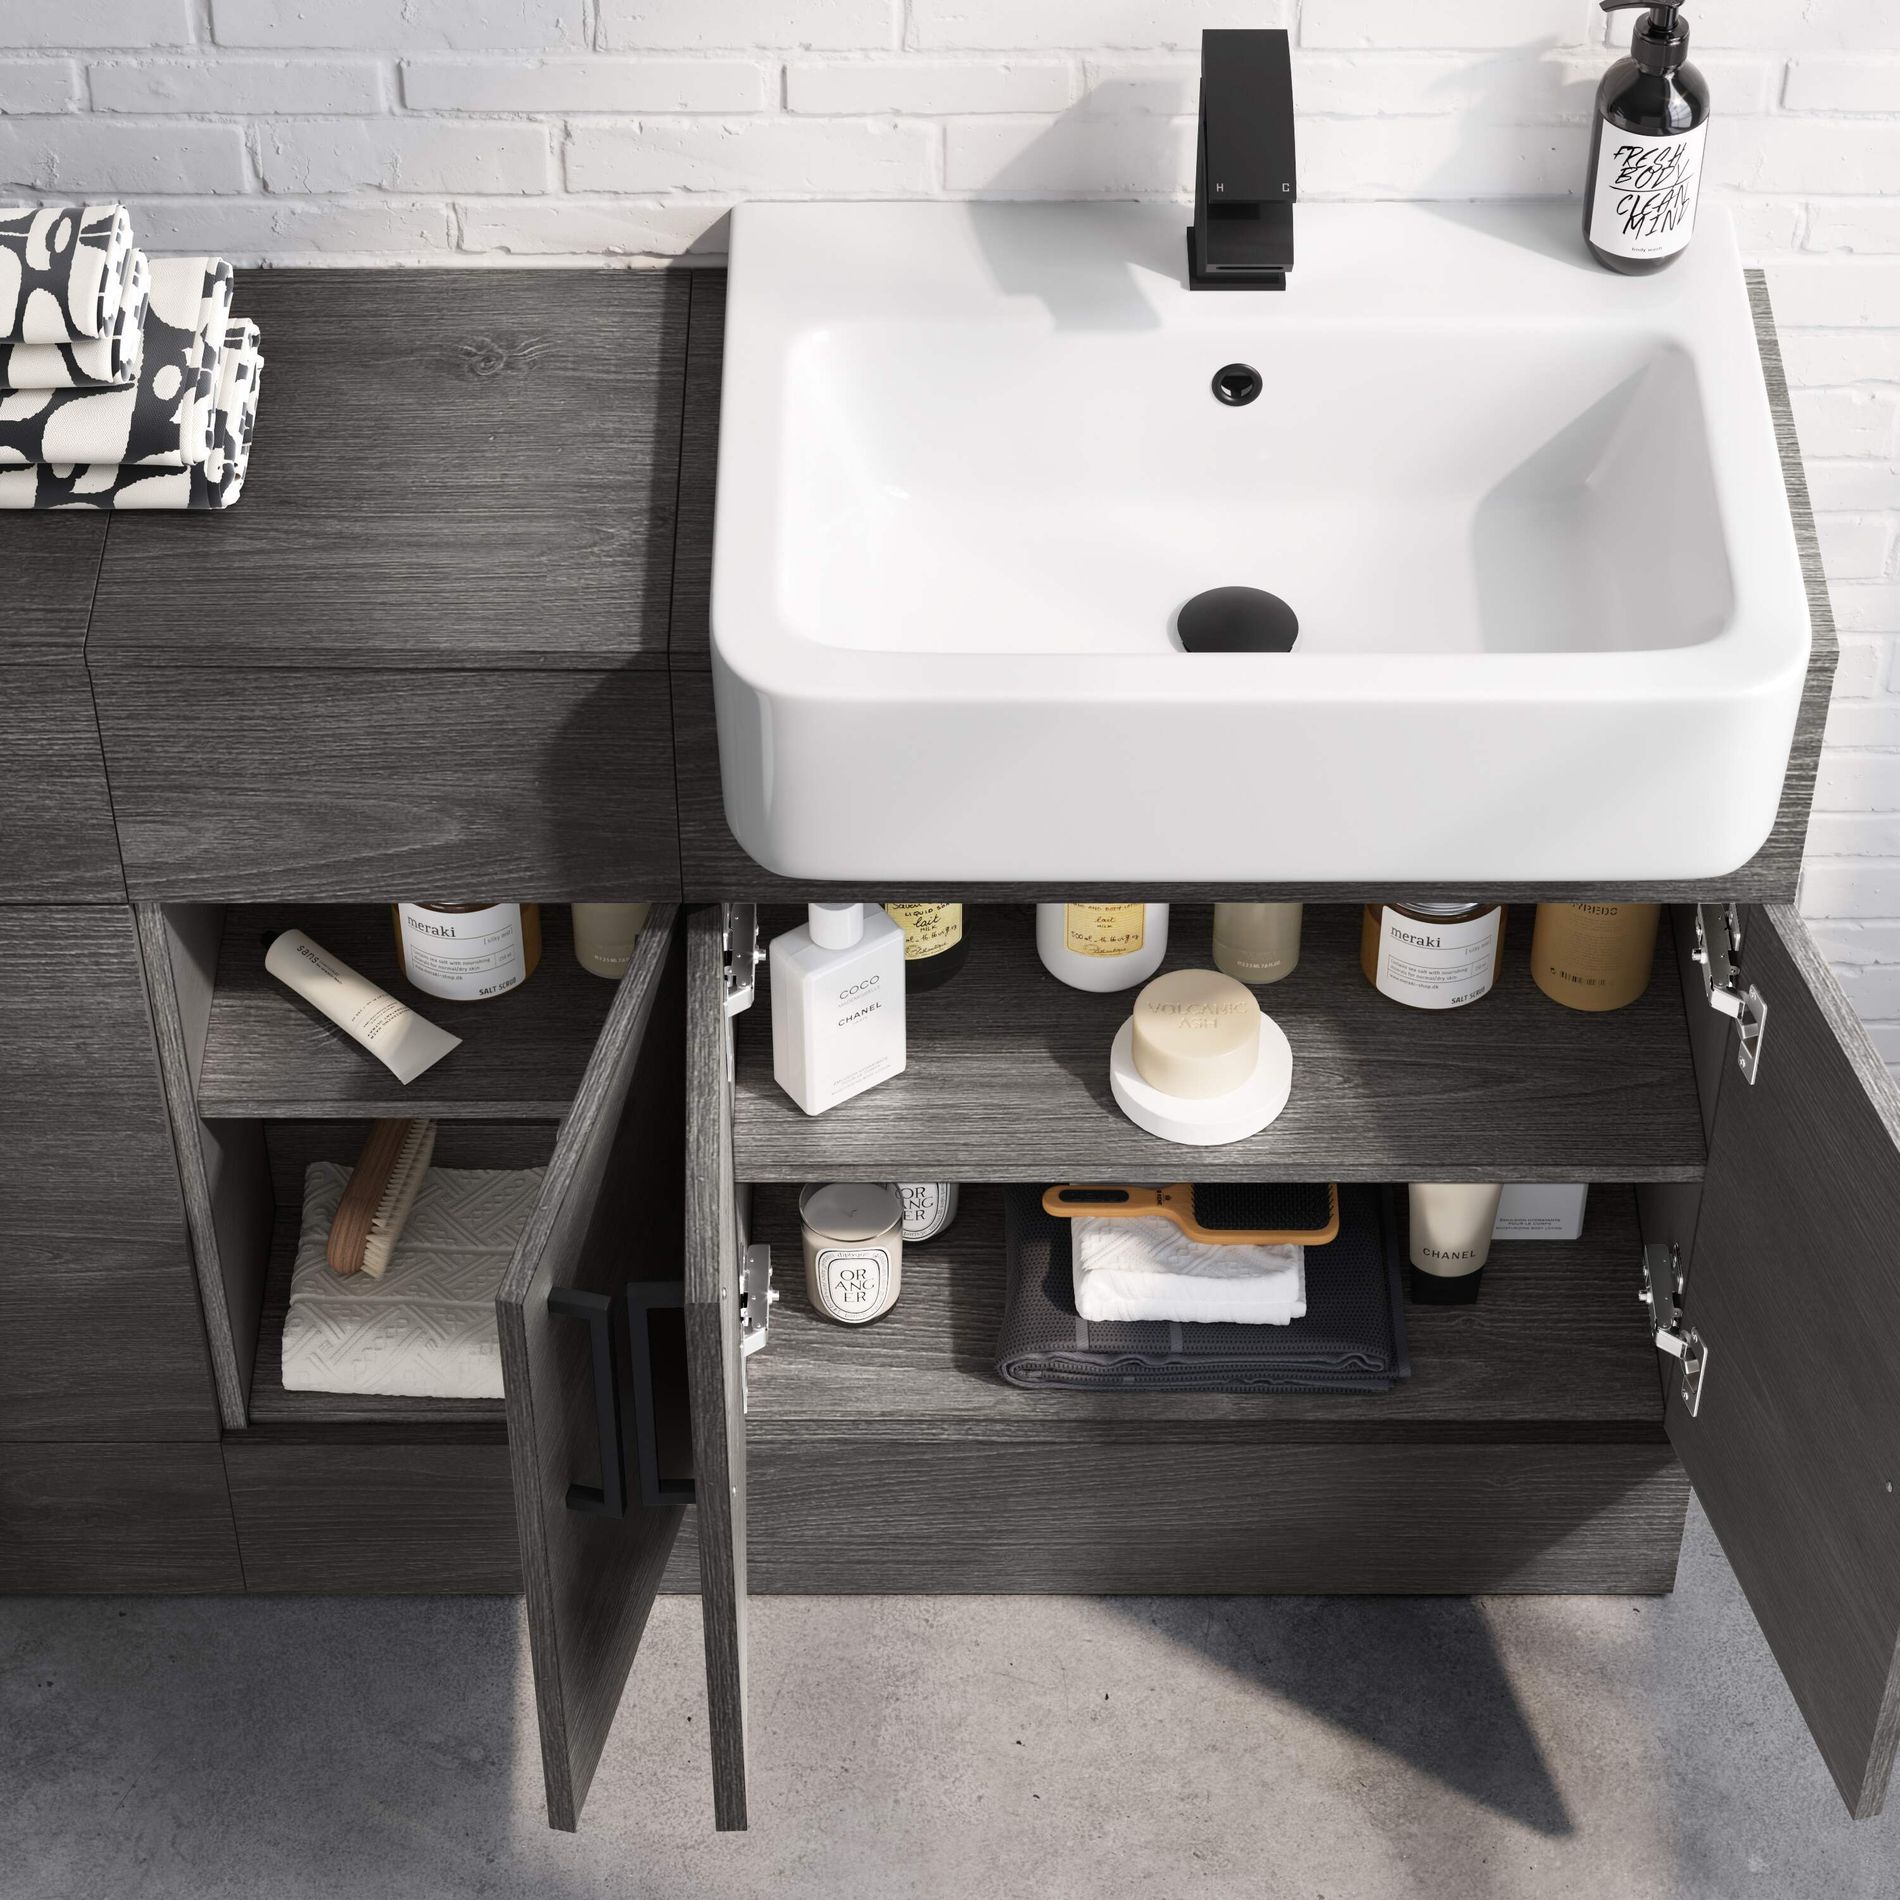 toilet and sink vanity unit b&q Sink waschbecken 1160mm cooke toilets basins badezimmer soak cabinet unterschrank dekoratix sabrosa harper lagerung bathroomsdesigns